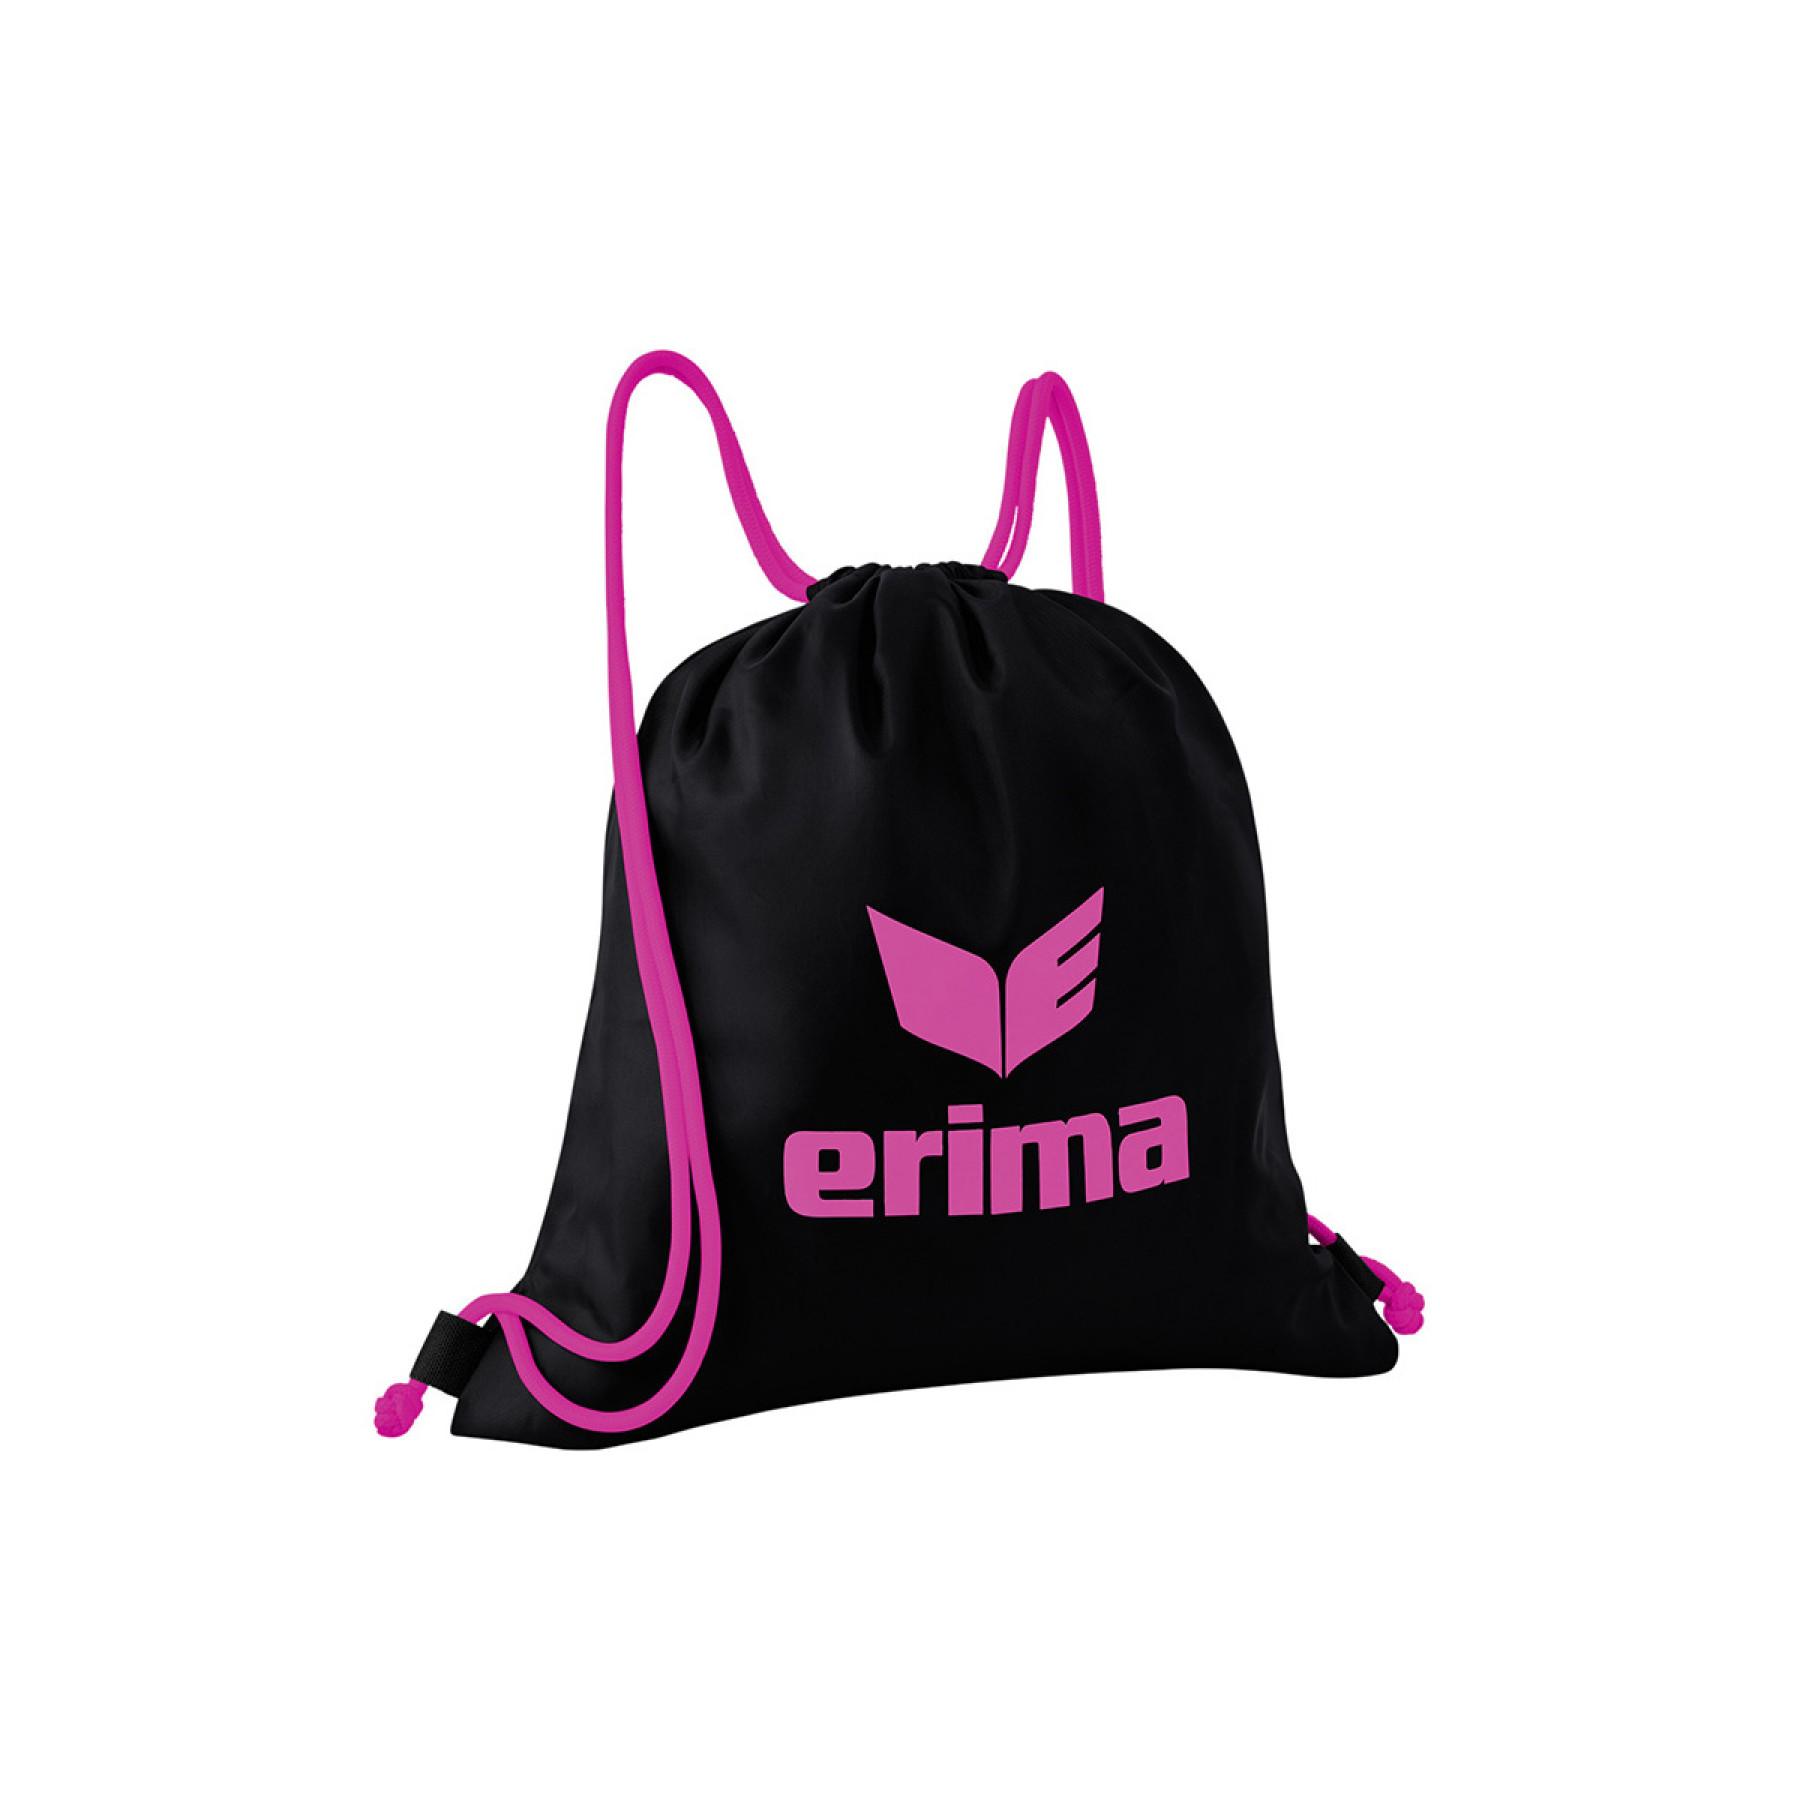 Mehrzweck-Tasche pro Erima